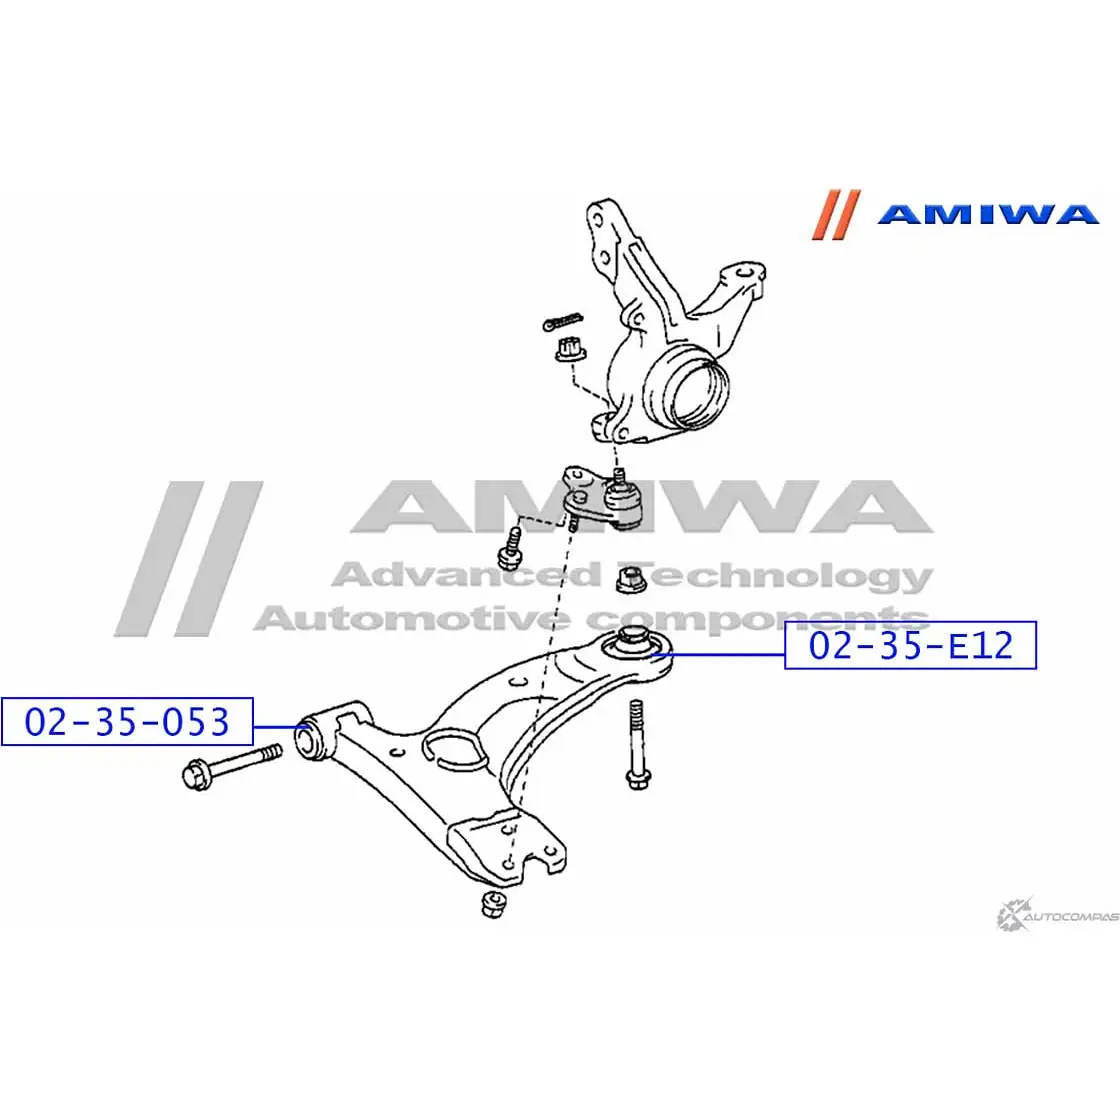 Сайленблок передний переднего рычага AMIWA OG 1CY9 FW71N3 1422492605 02-35-053 изображение 1